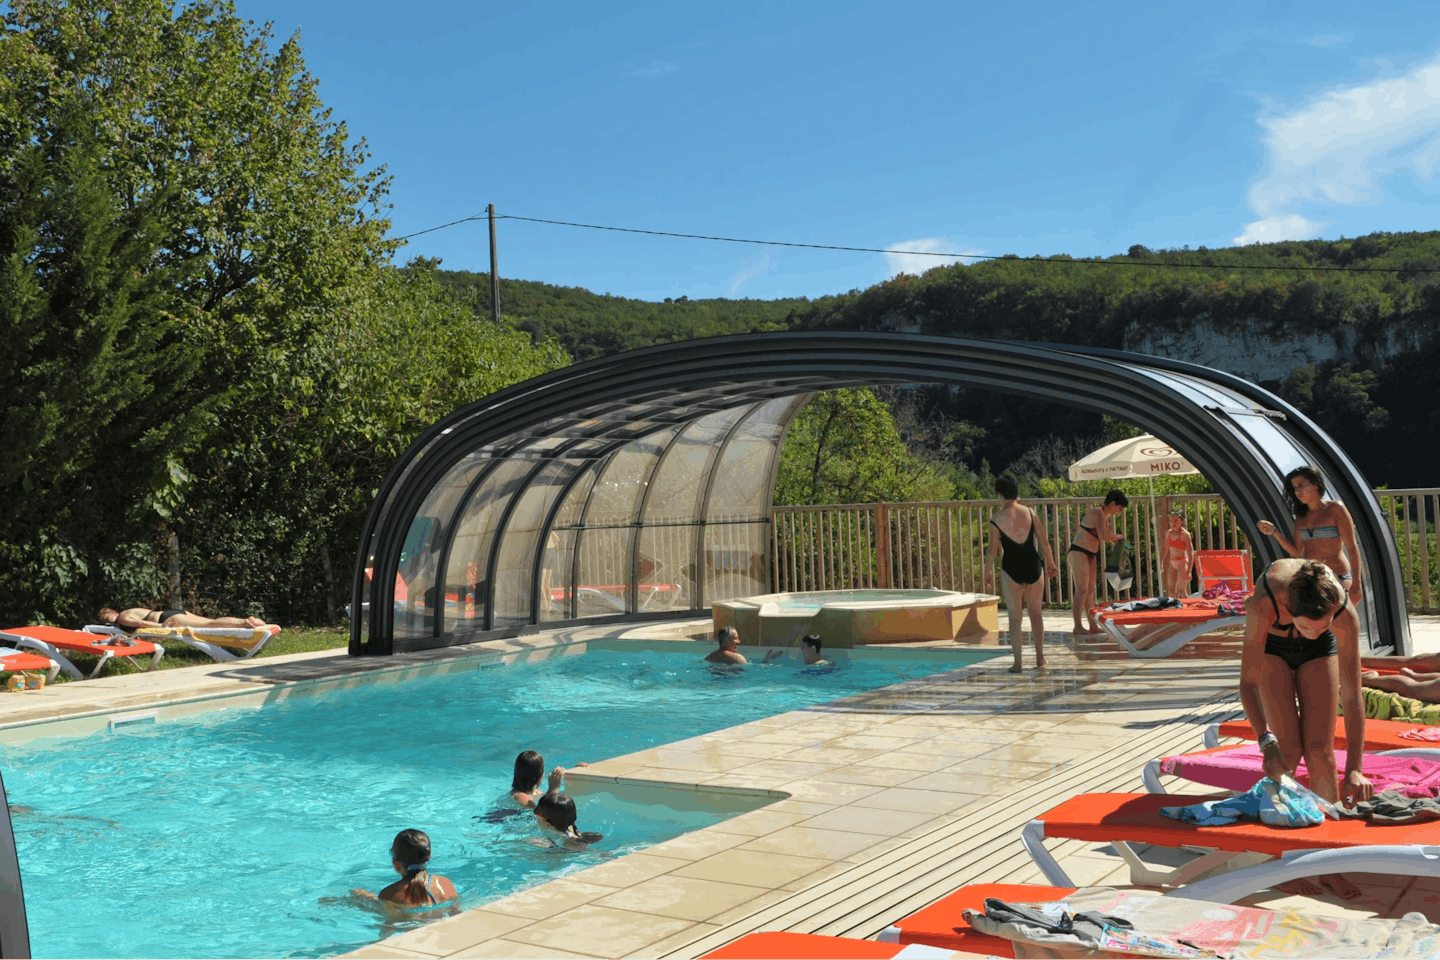 Camping La Sagne - Poolbereich vom Campingplatz mit Whirlpool und Liegestühlen in der Sonne